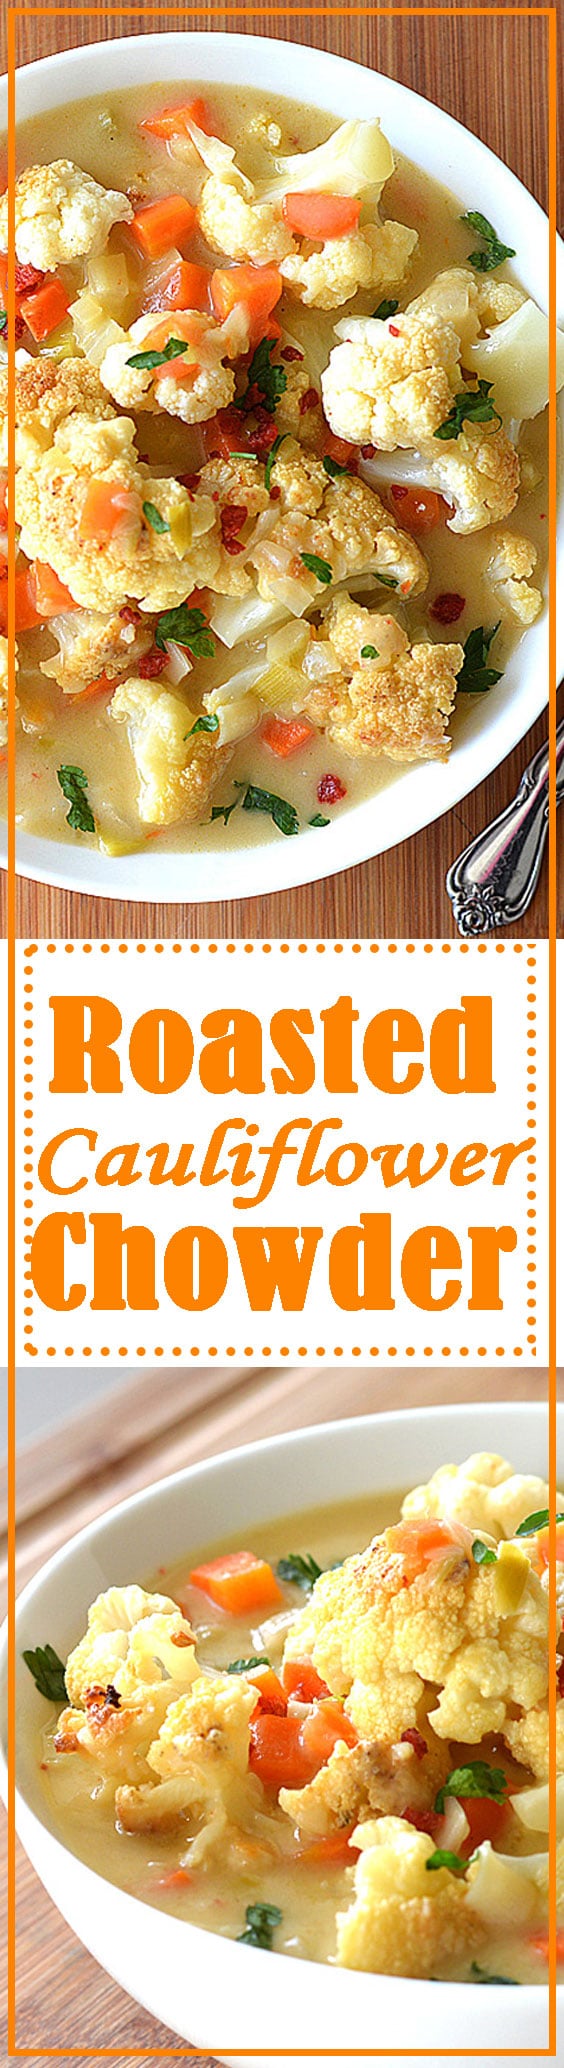 Roasted Cauliflower Chowder